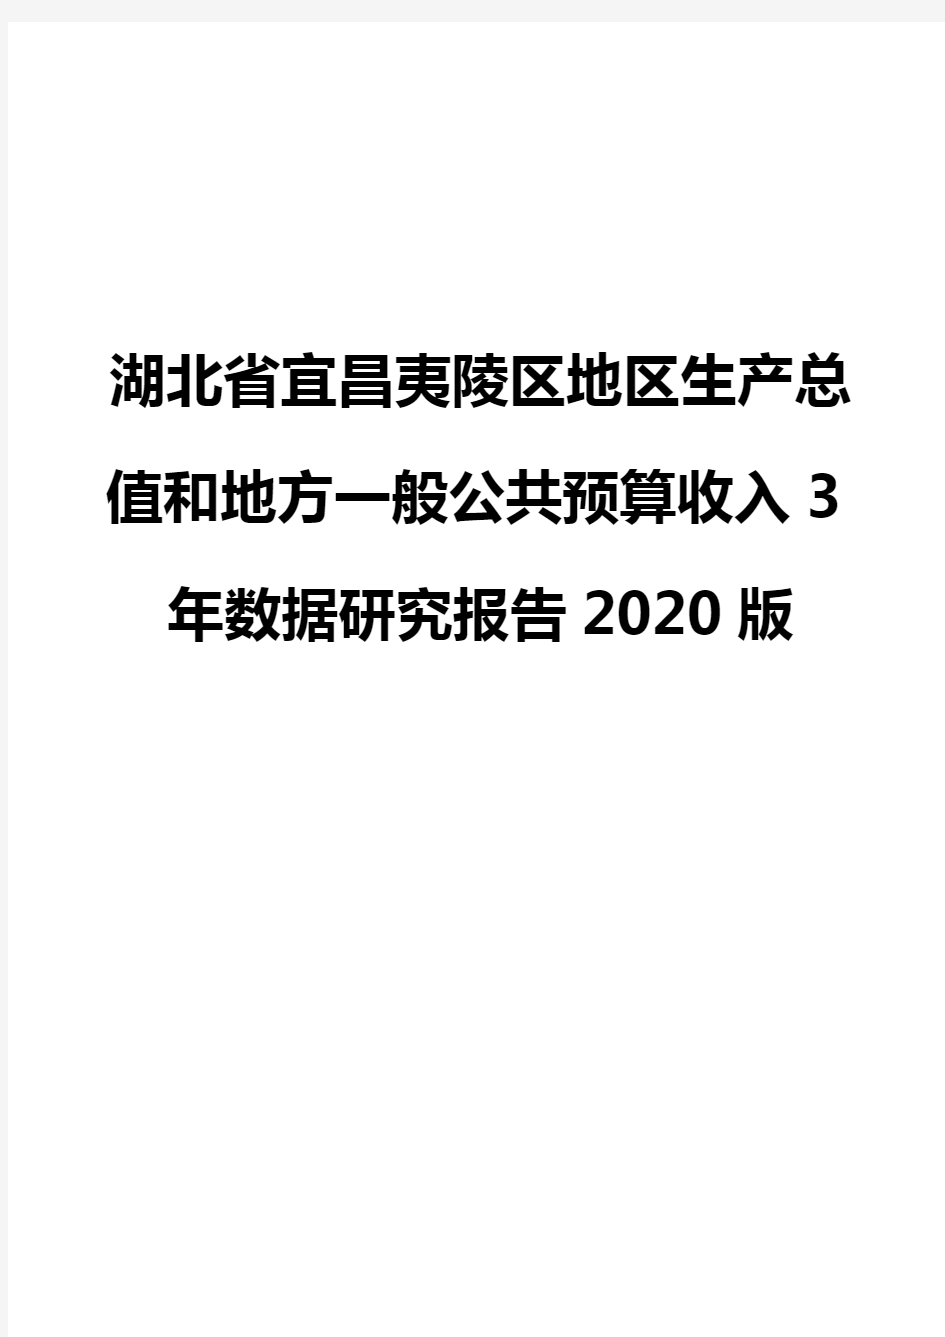 湖北省宜昌夷陵区地区生产总值和地方一般公共预算收入3年数据研究报告2020版